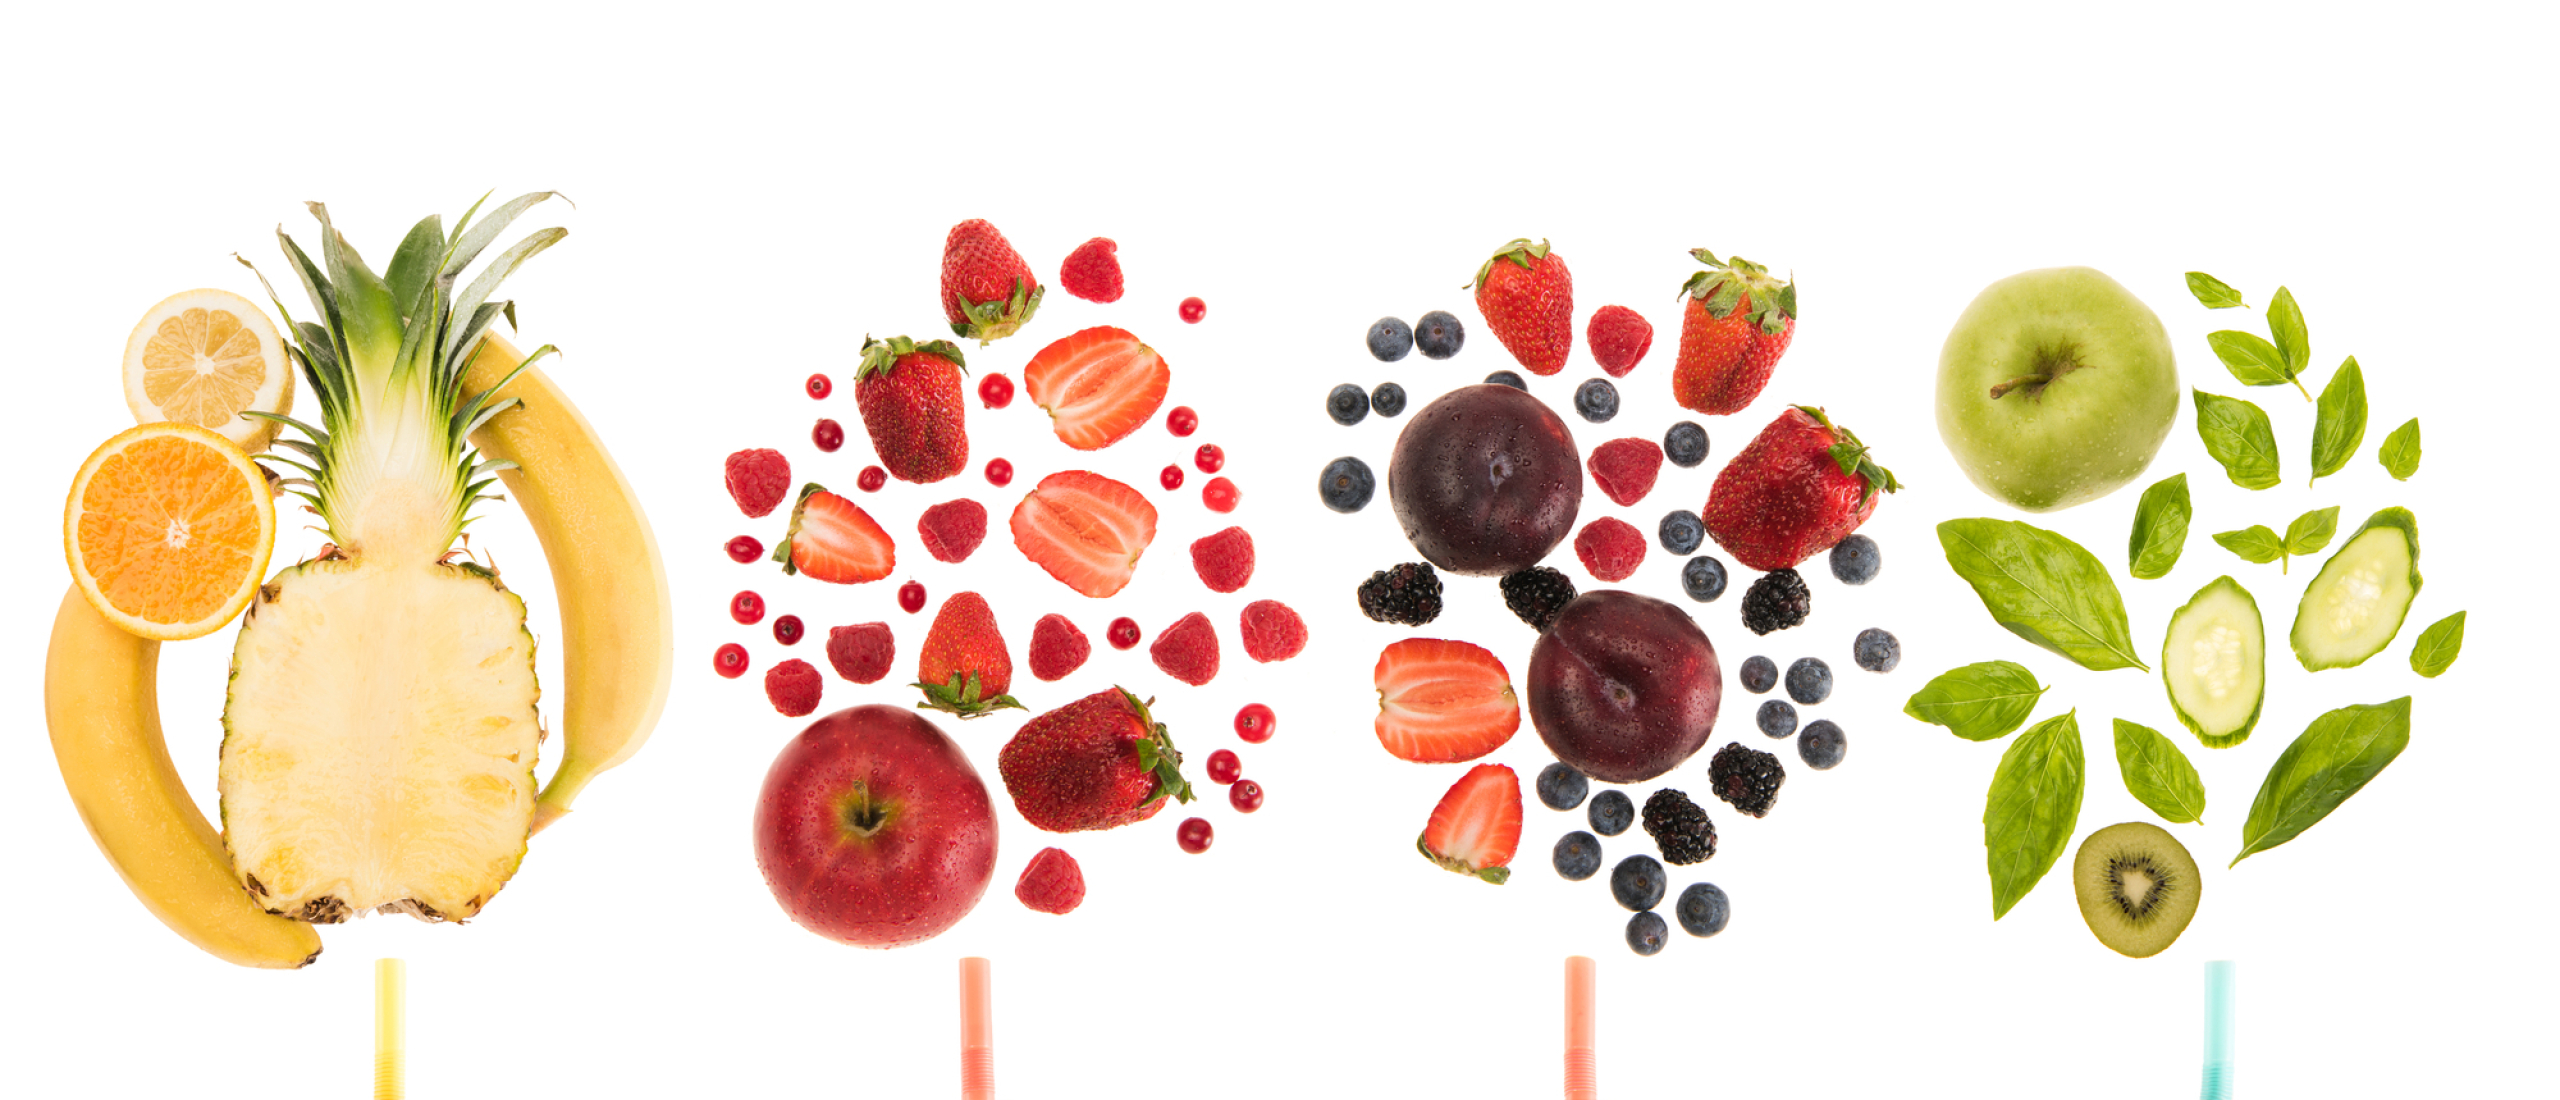 Niet alle fruitsoorten zijn even gezond: een top vijf om als eerste uit te kiezen.